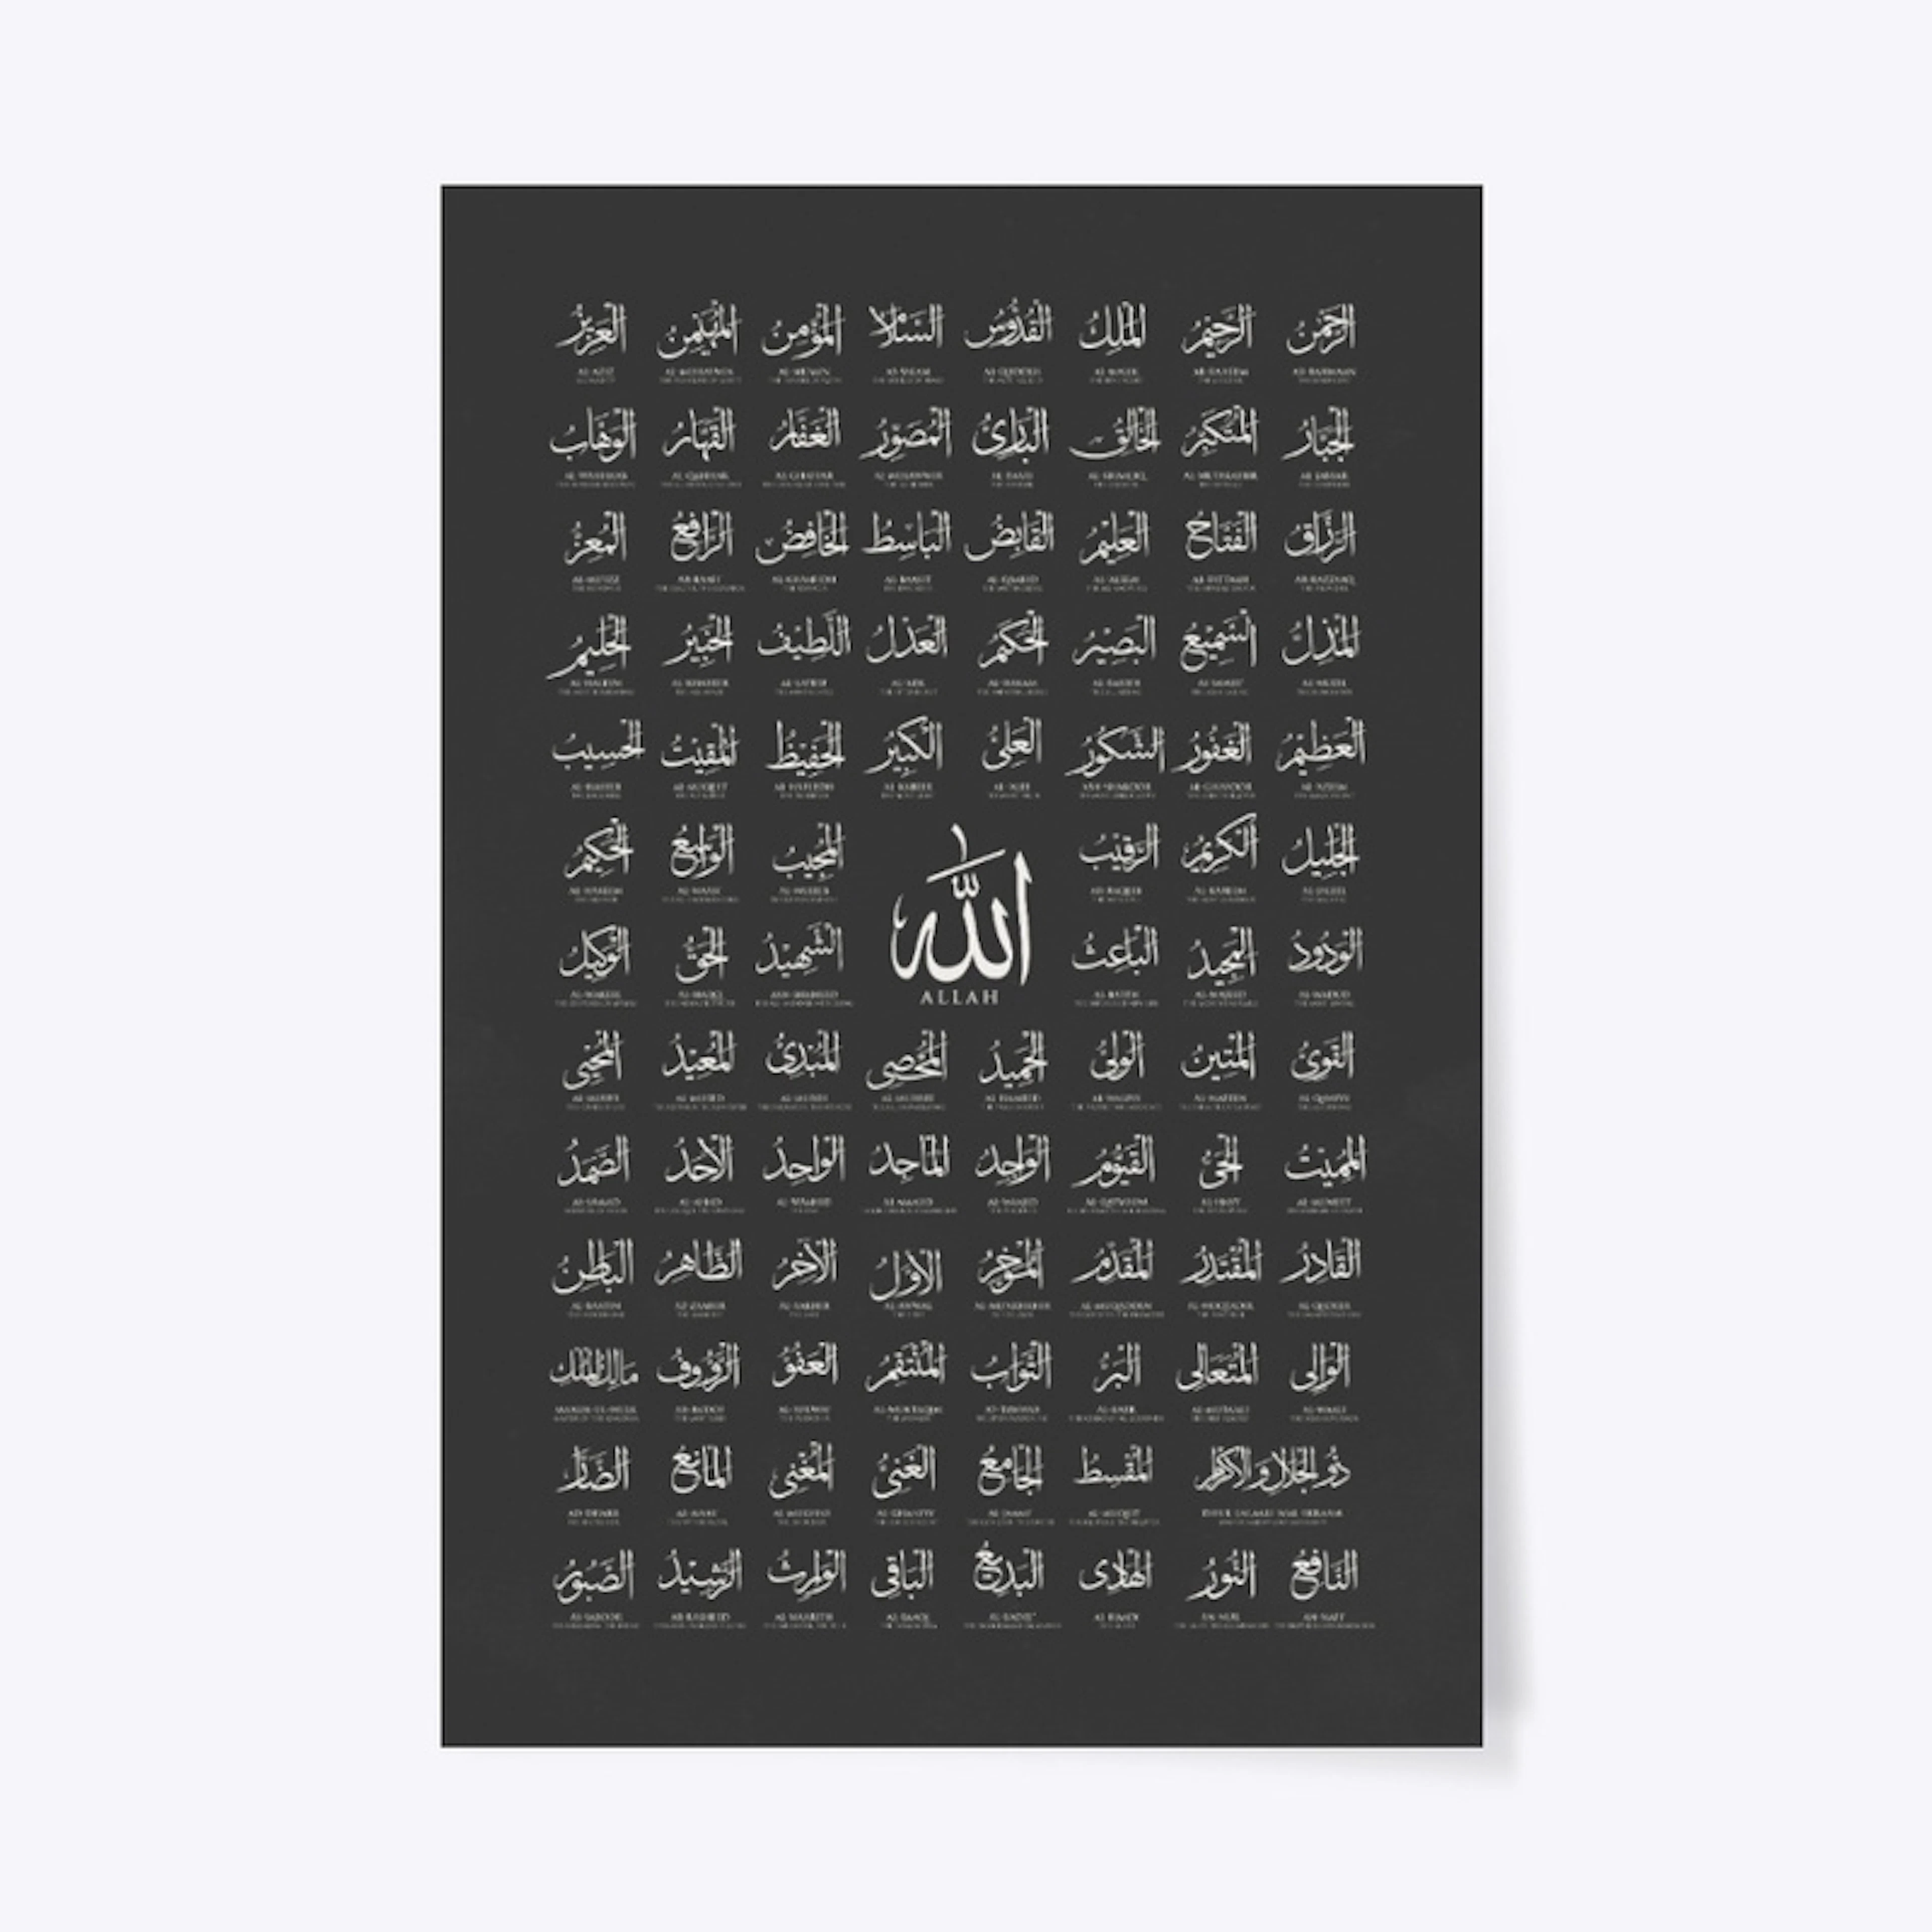  99 names of Allah 